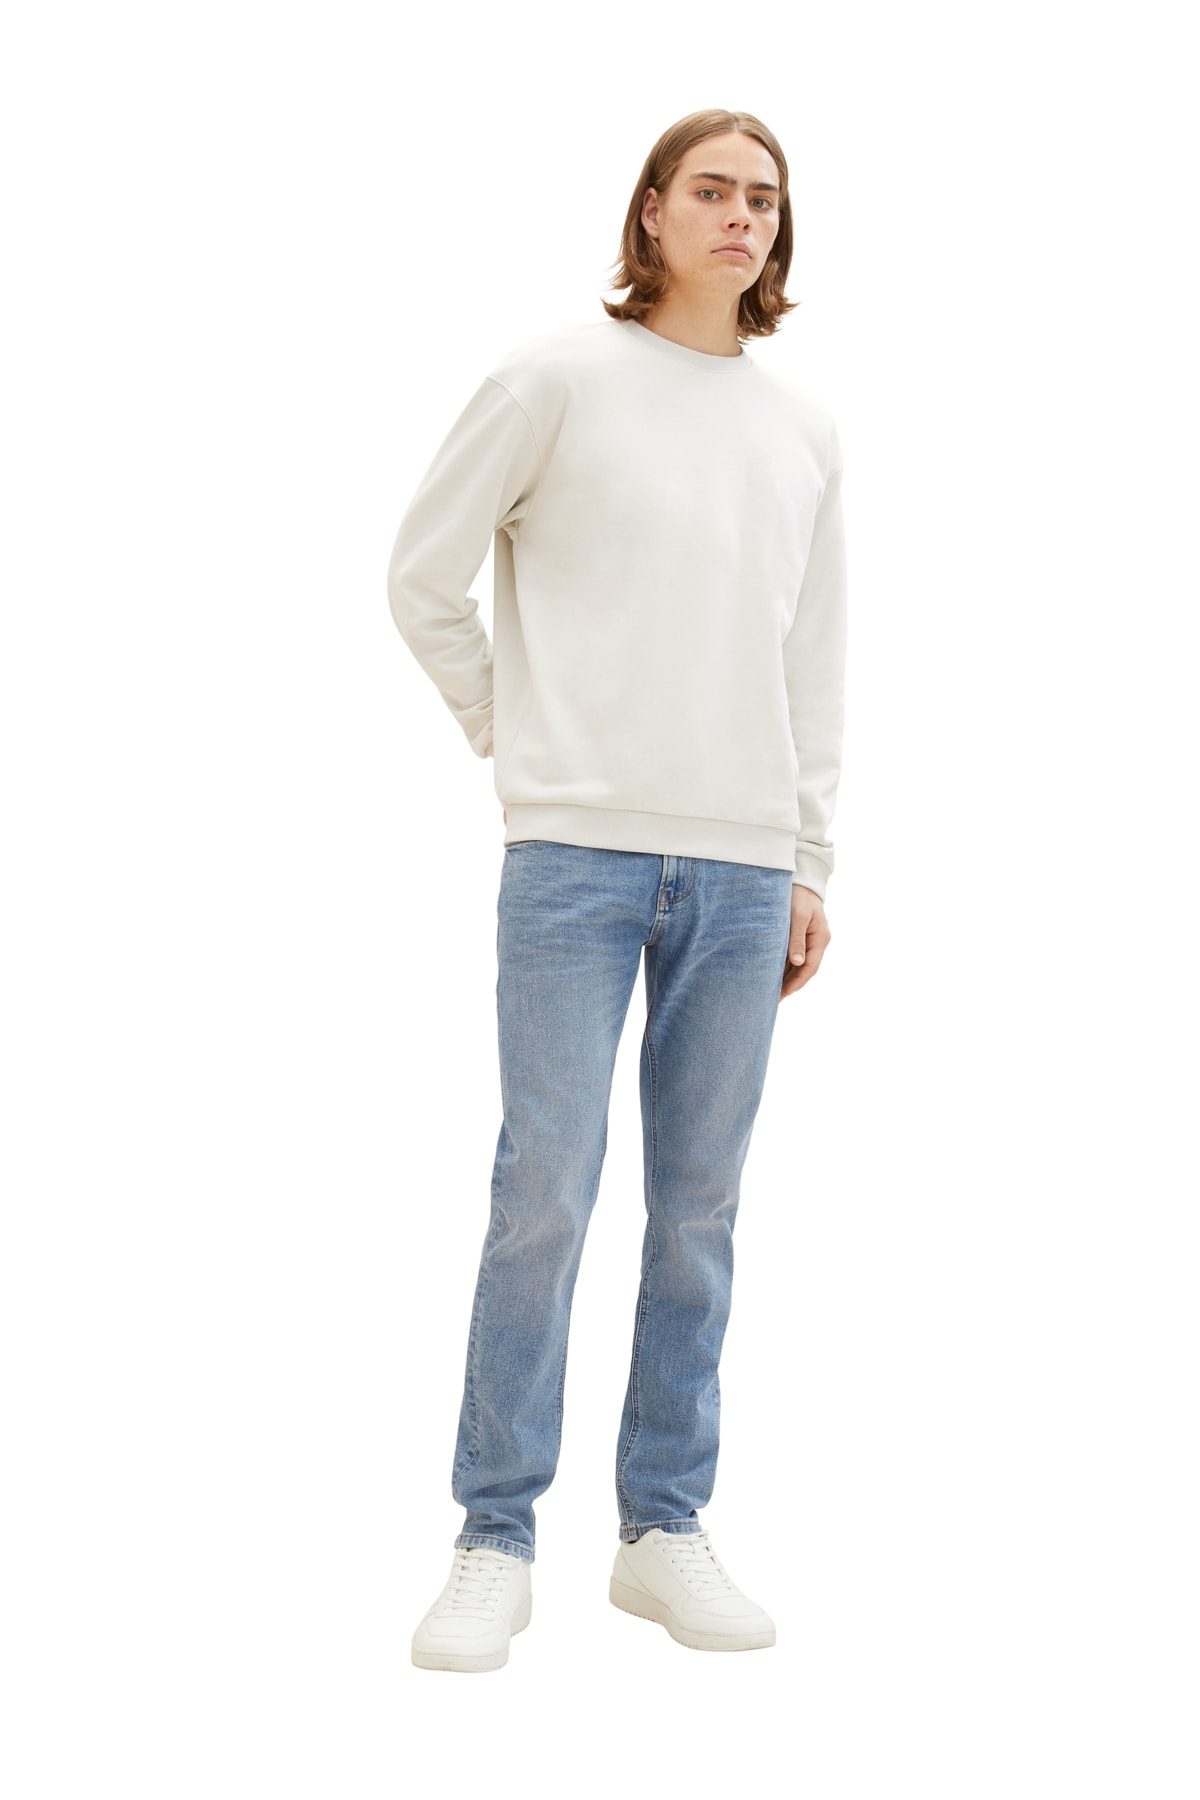 Джинсы - Серые - Прямые Tom Tailor Denim, серый джинсы denim fashion серые 40 размер новые